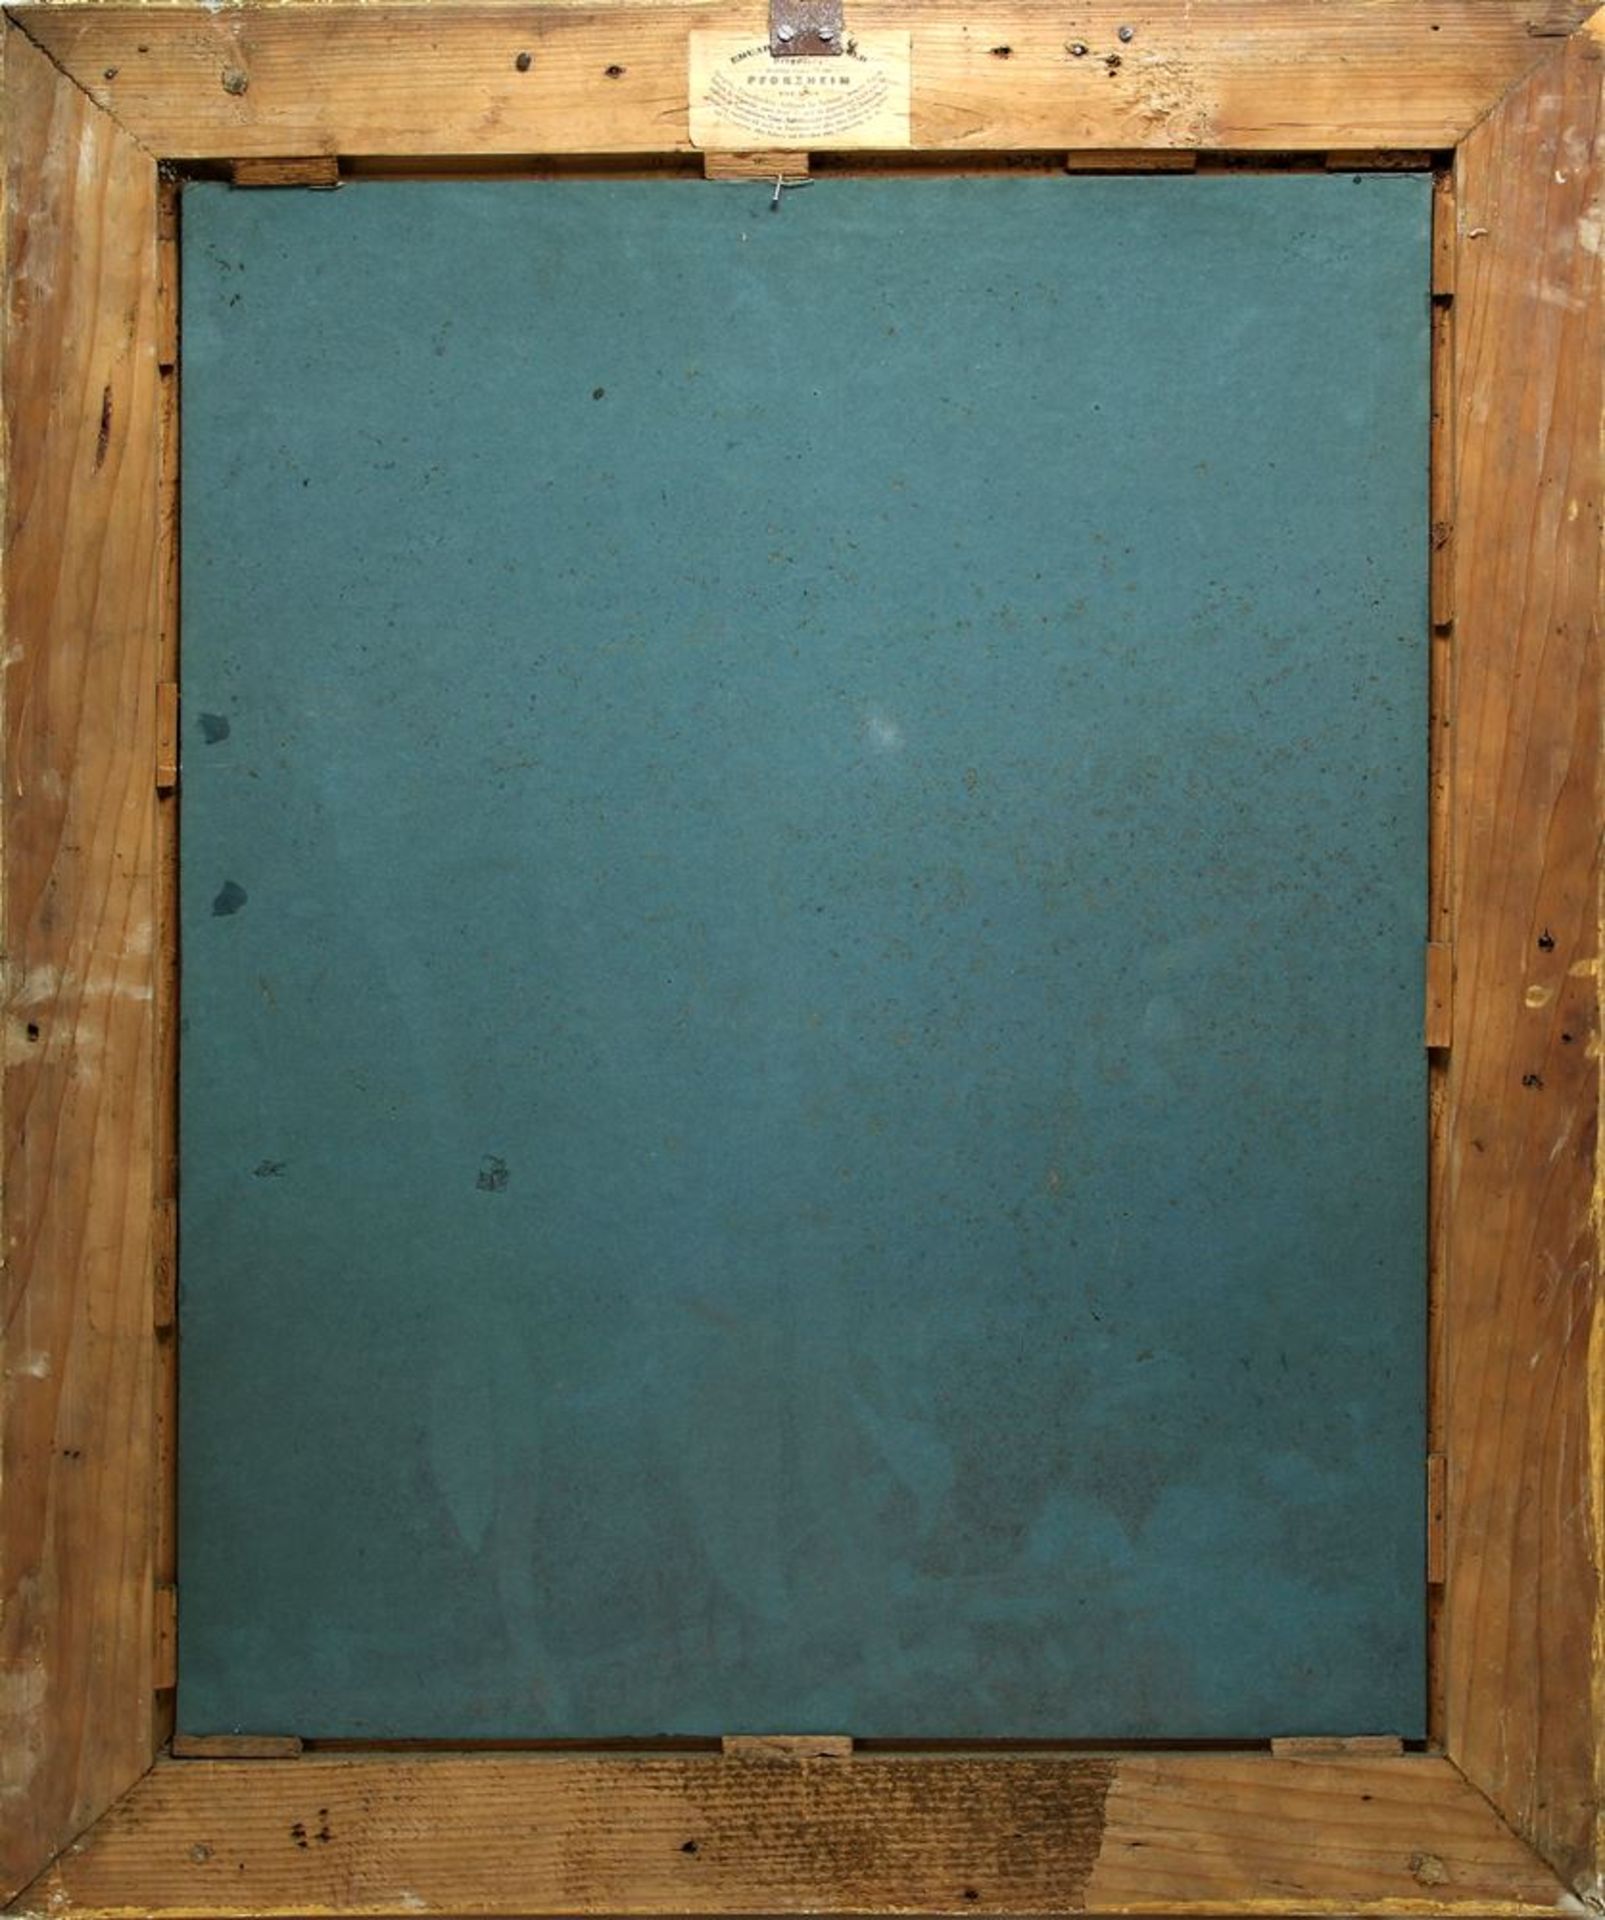 Barockstilrahmenum 1900. Aufwendig gearbeitet und teils vergoldet. Größe ca. 77,5 x 63,5 cm. - Bild 3 aus 3